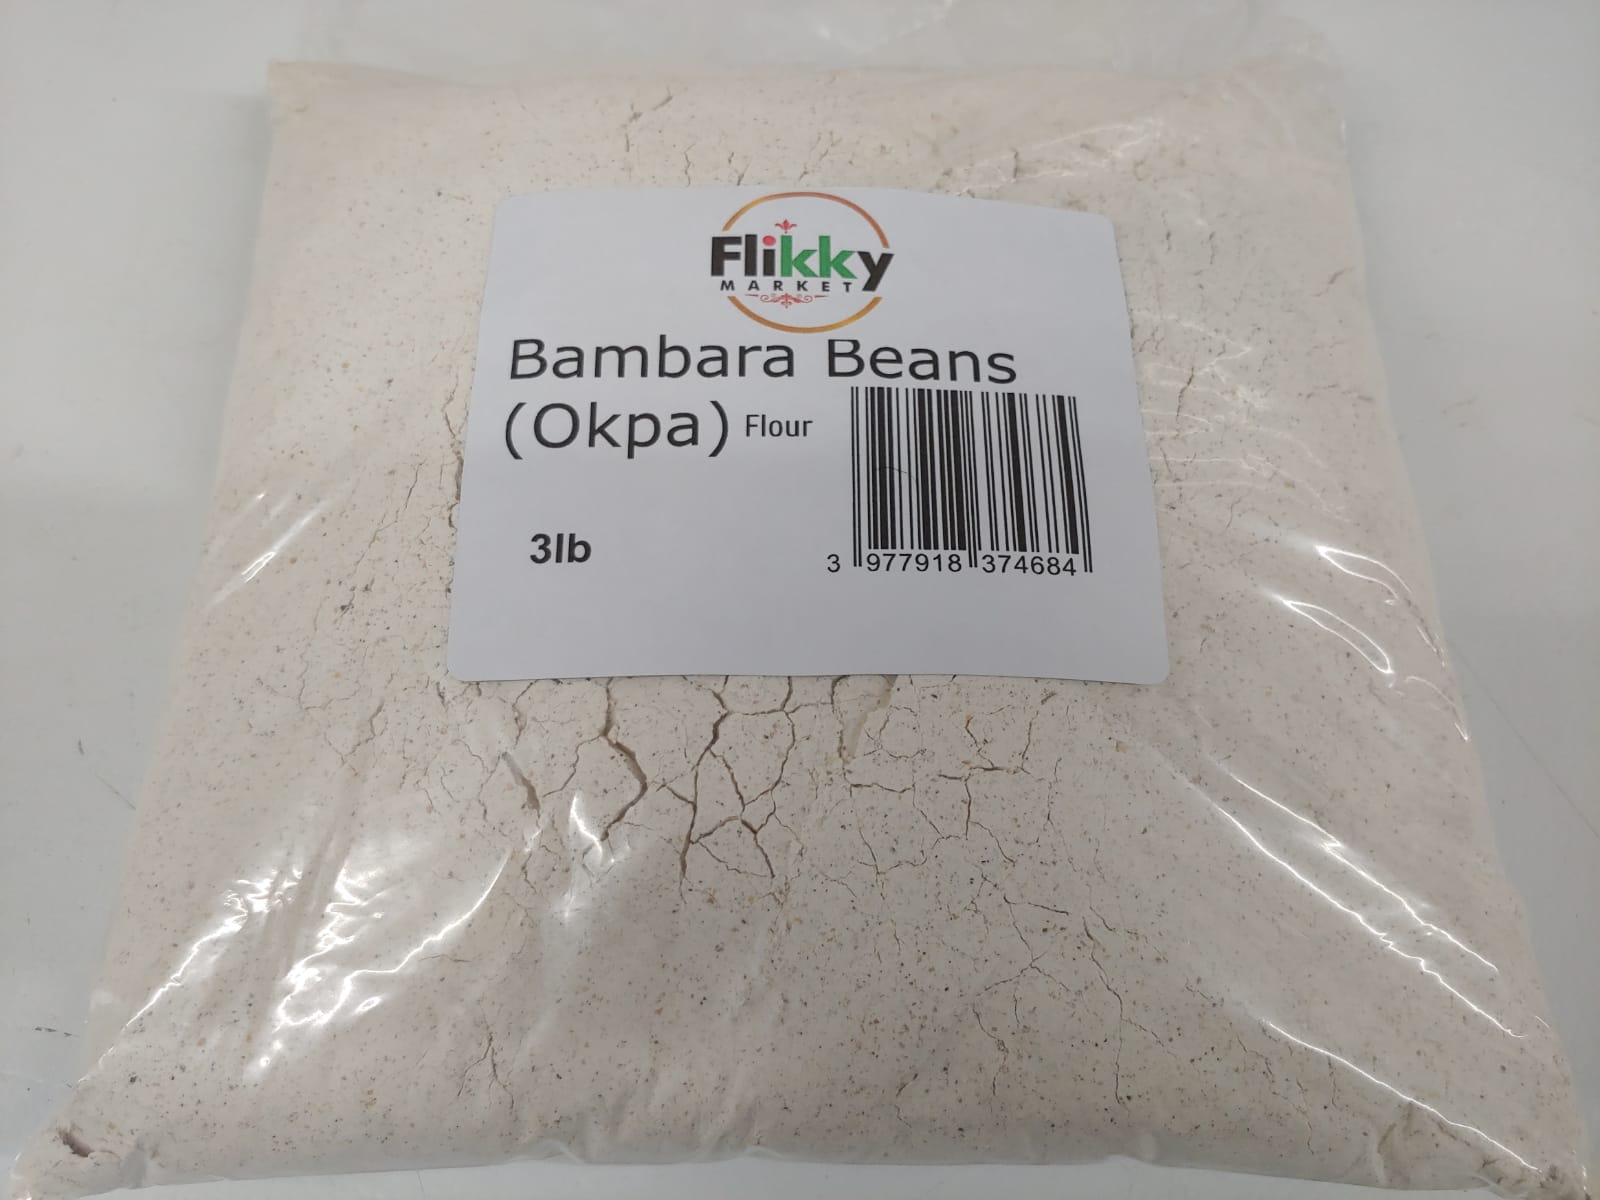 Flikky Bambara Beans Flour 3lb